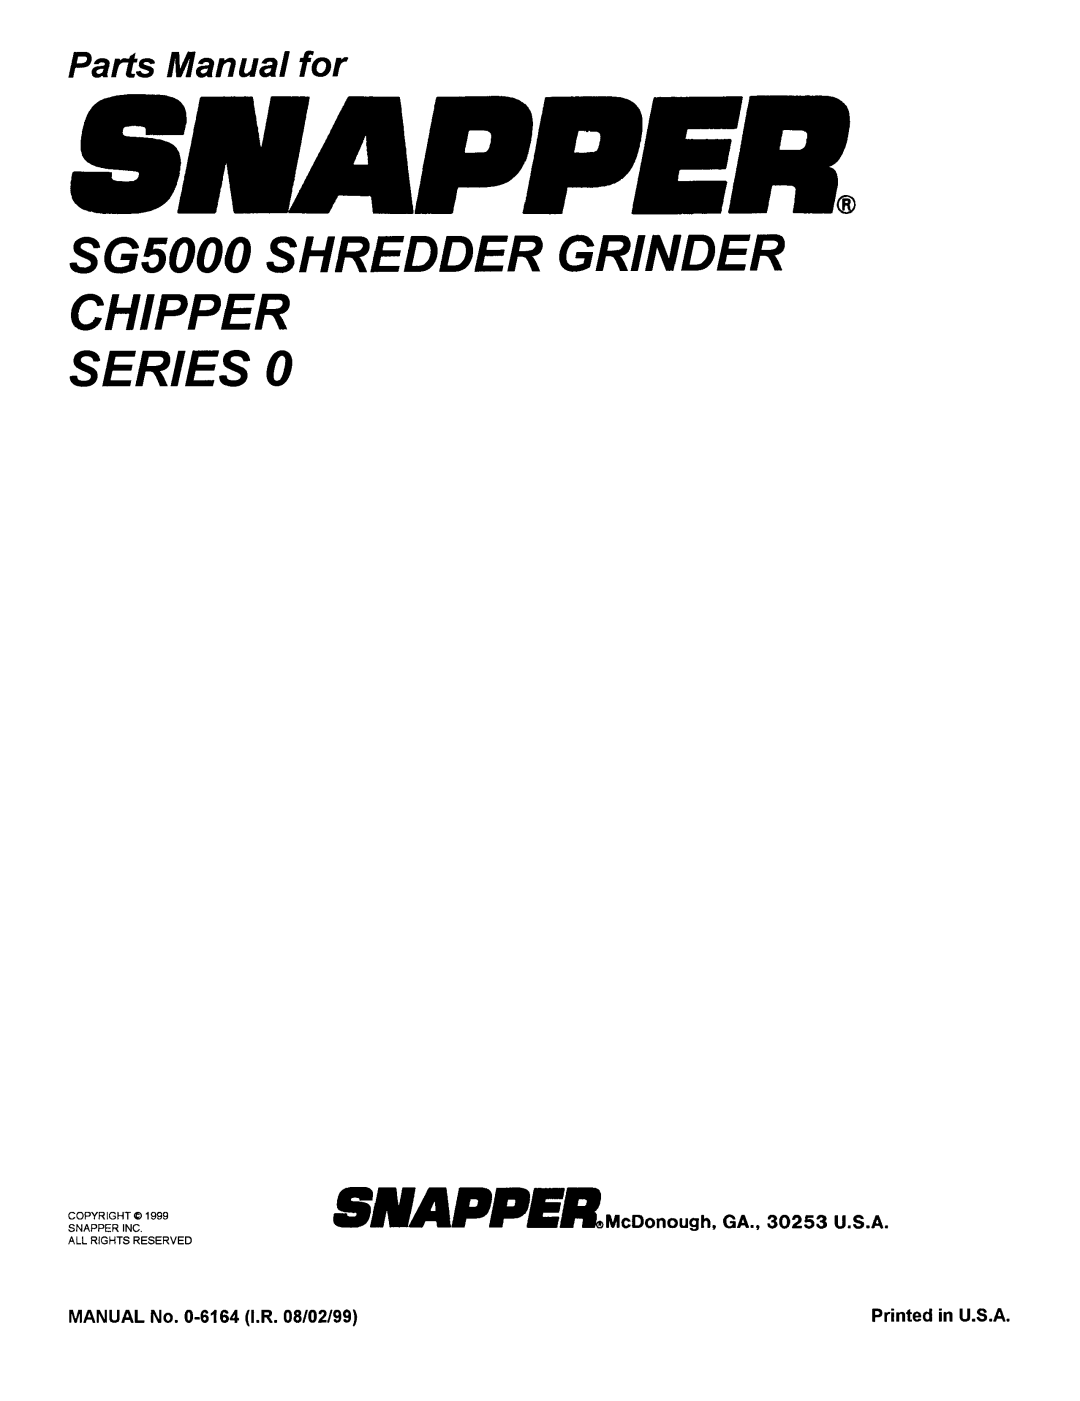 Snapper SG 5000 manual 